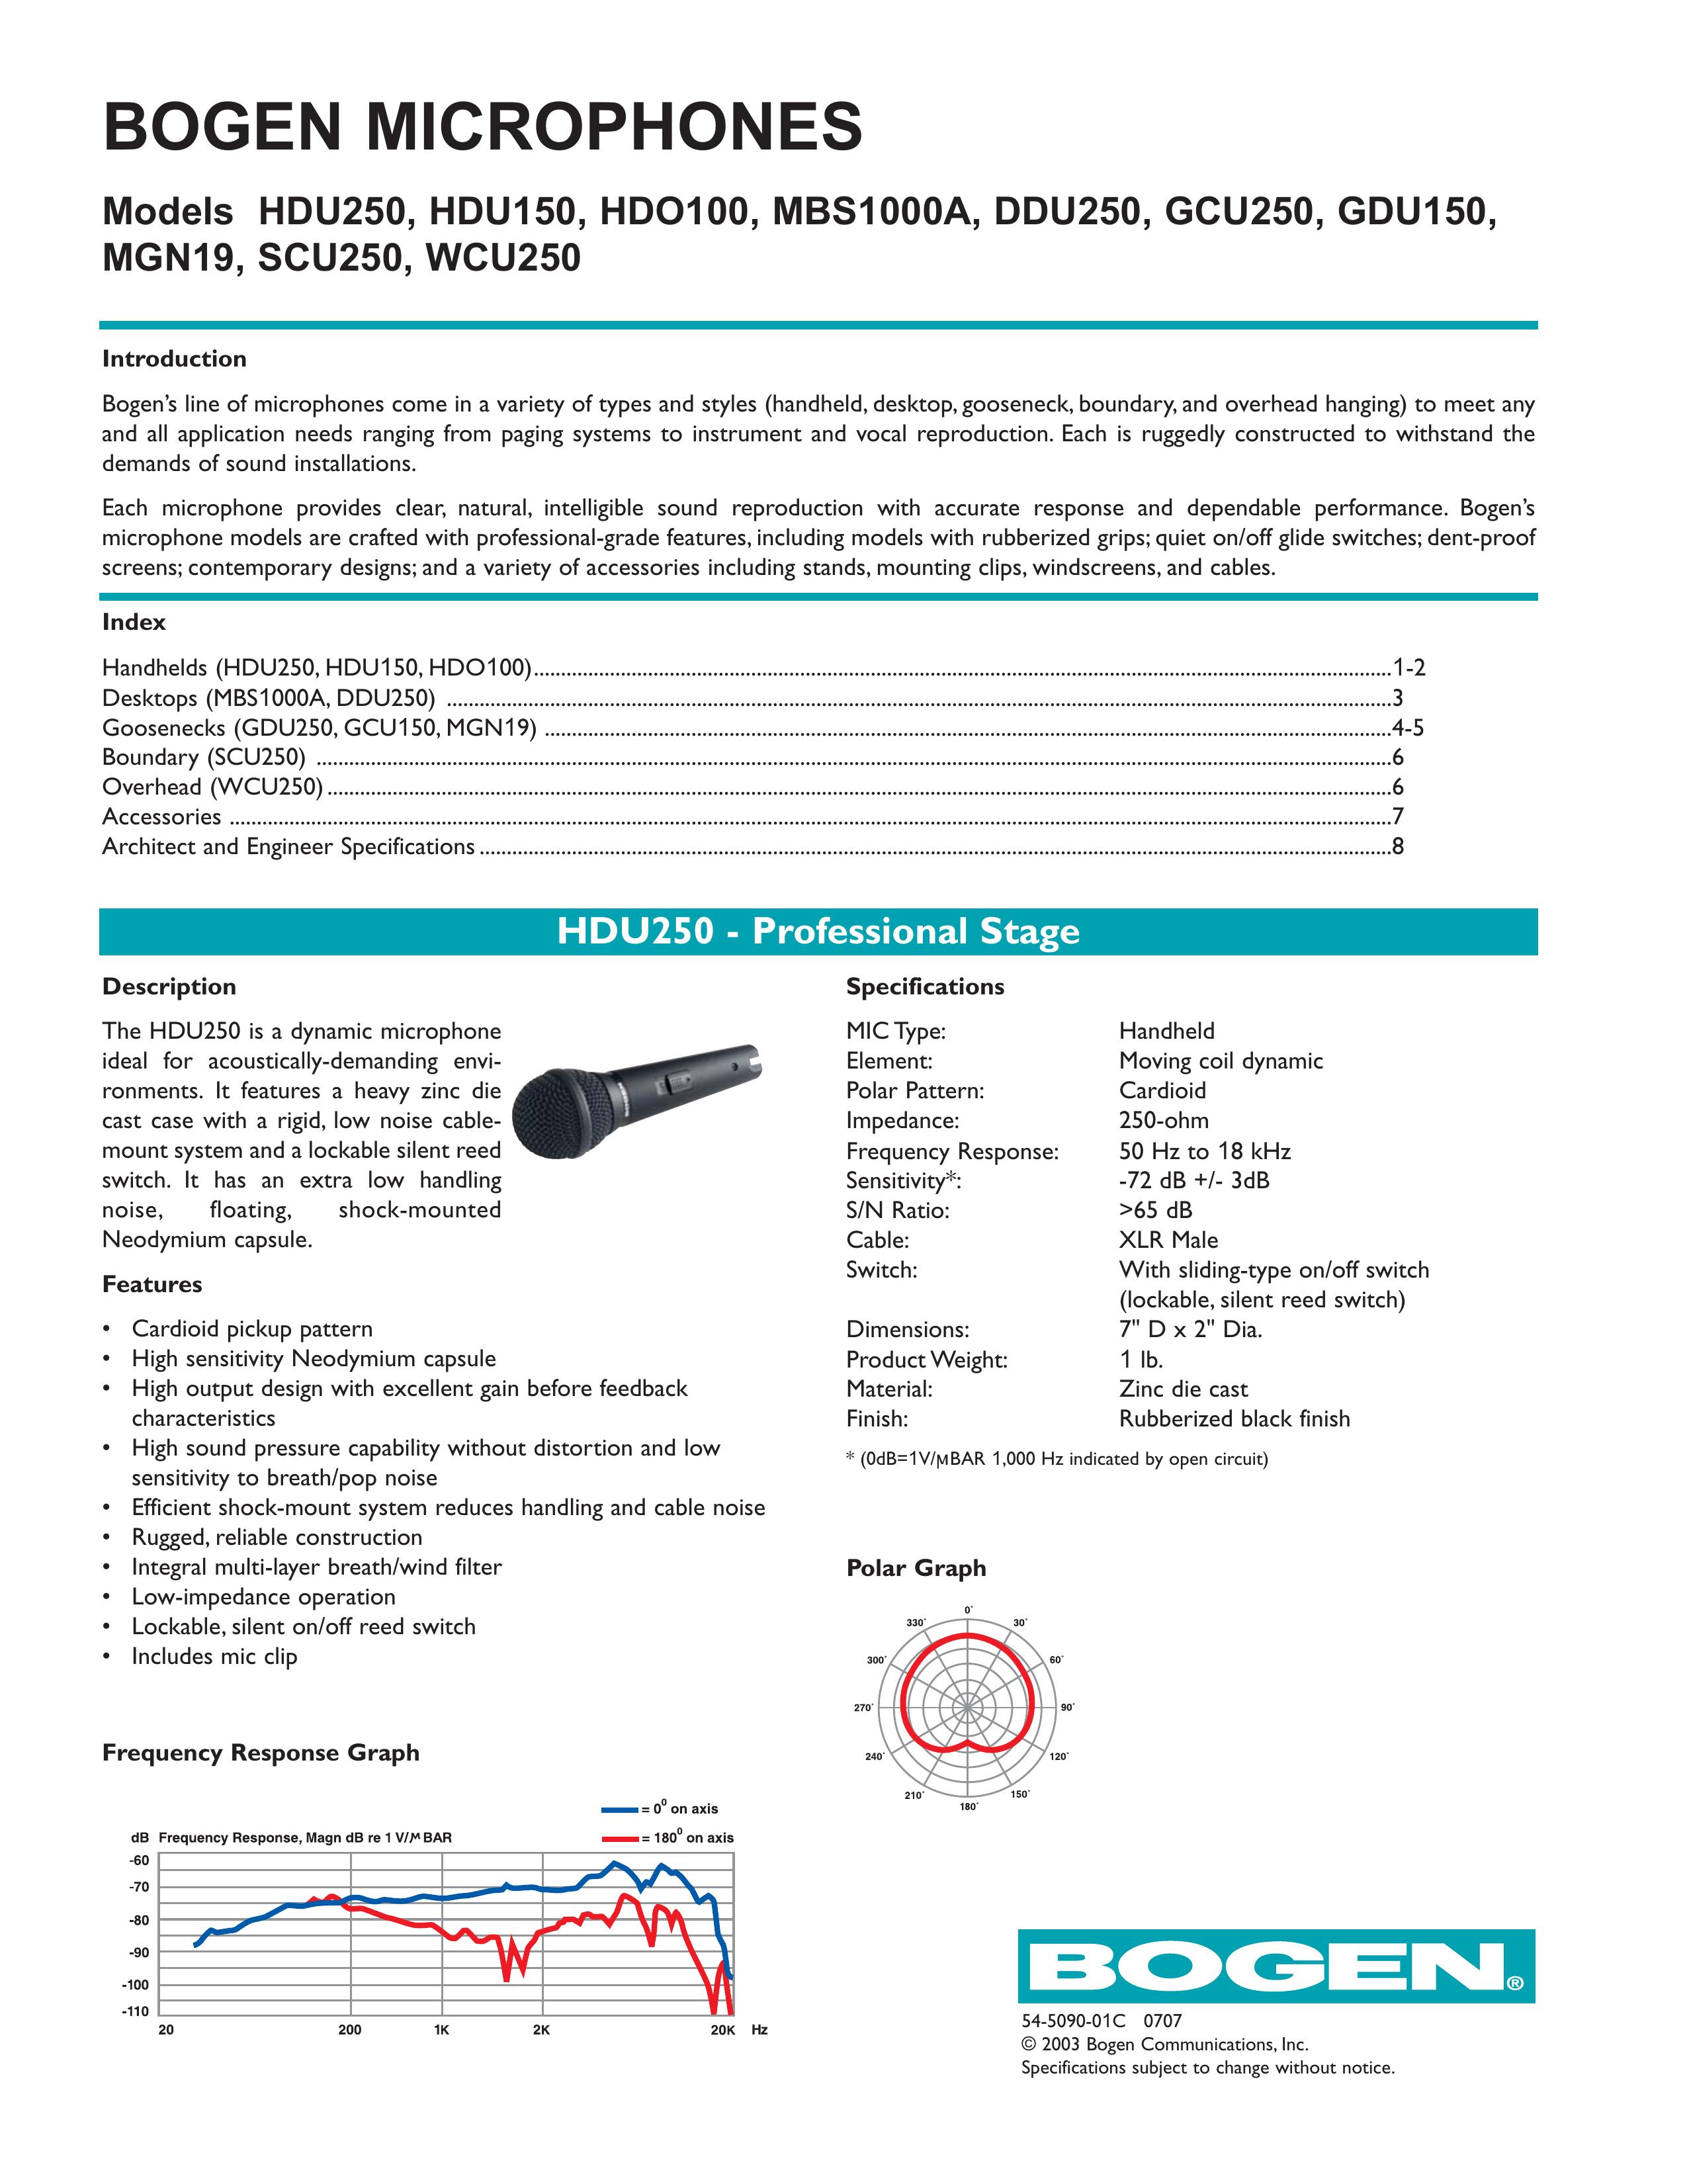 Bogen HDU250 Microphone User Manual